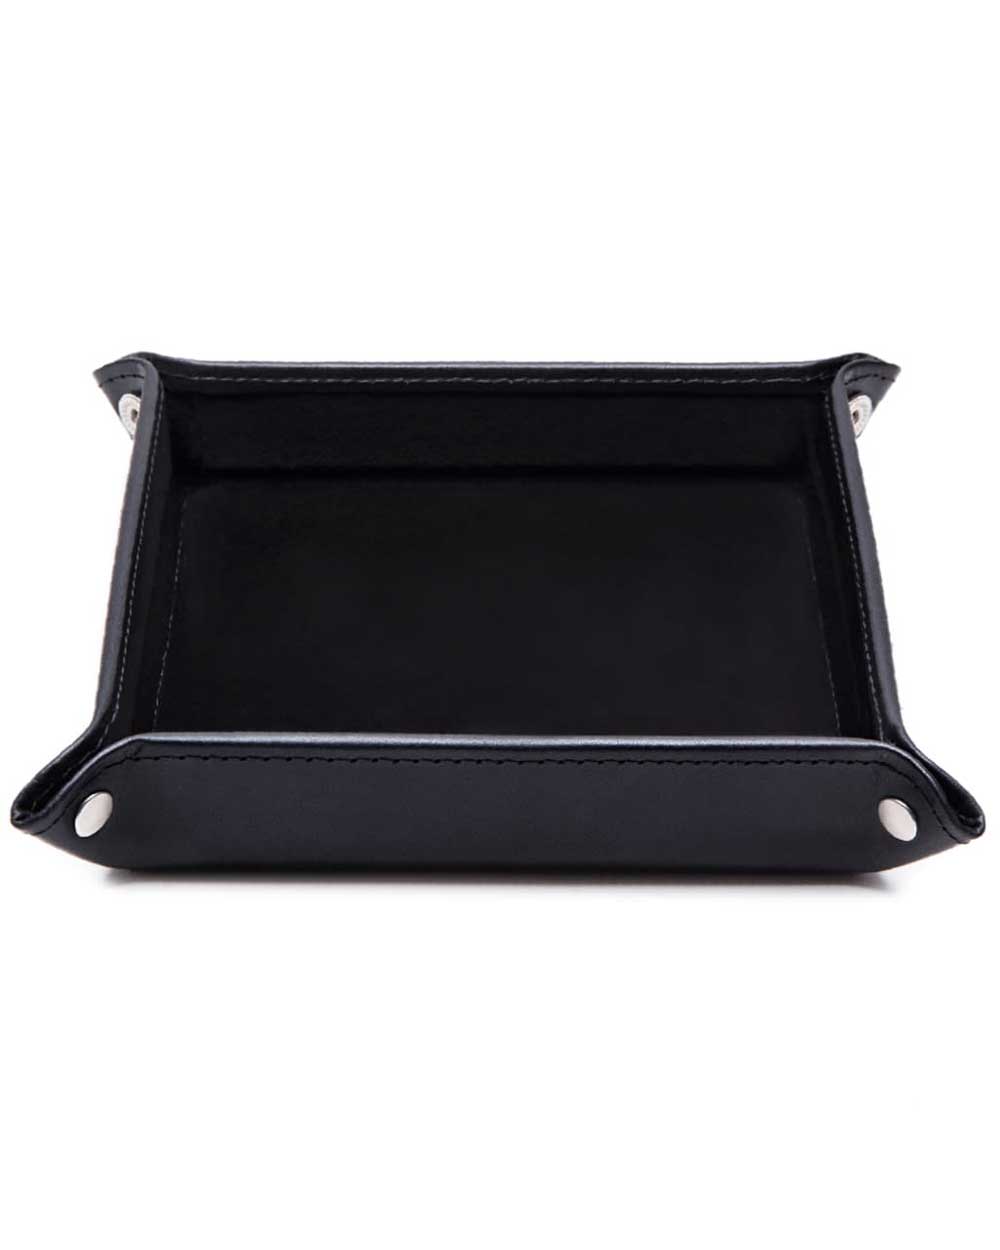 Black Large Stud or Jewellery Box